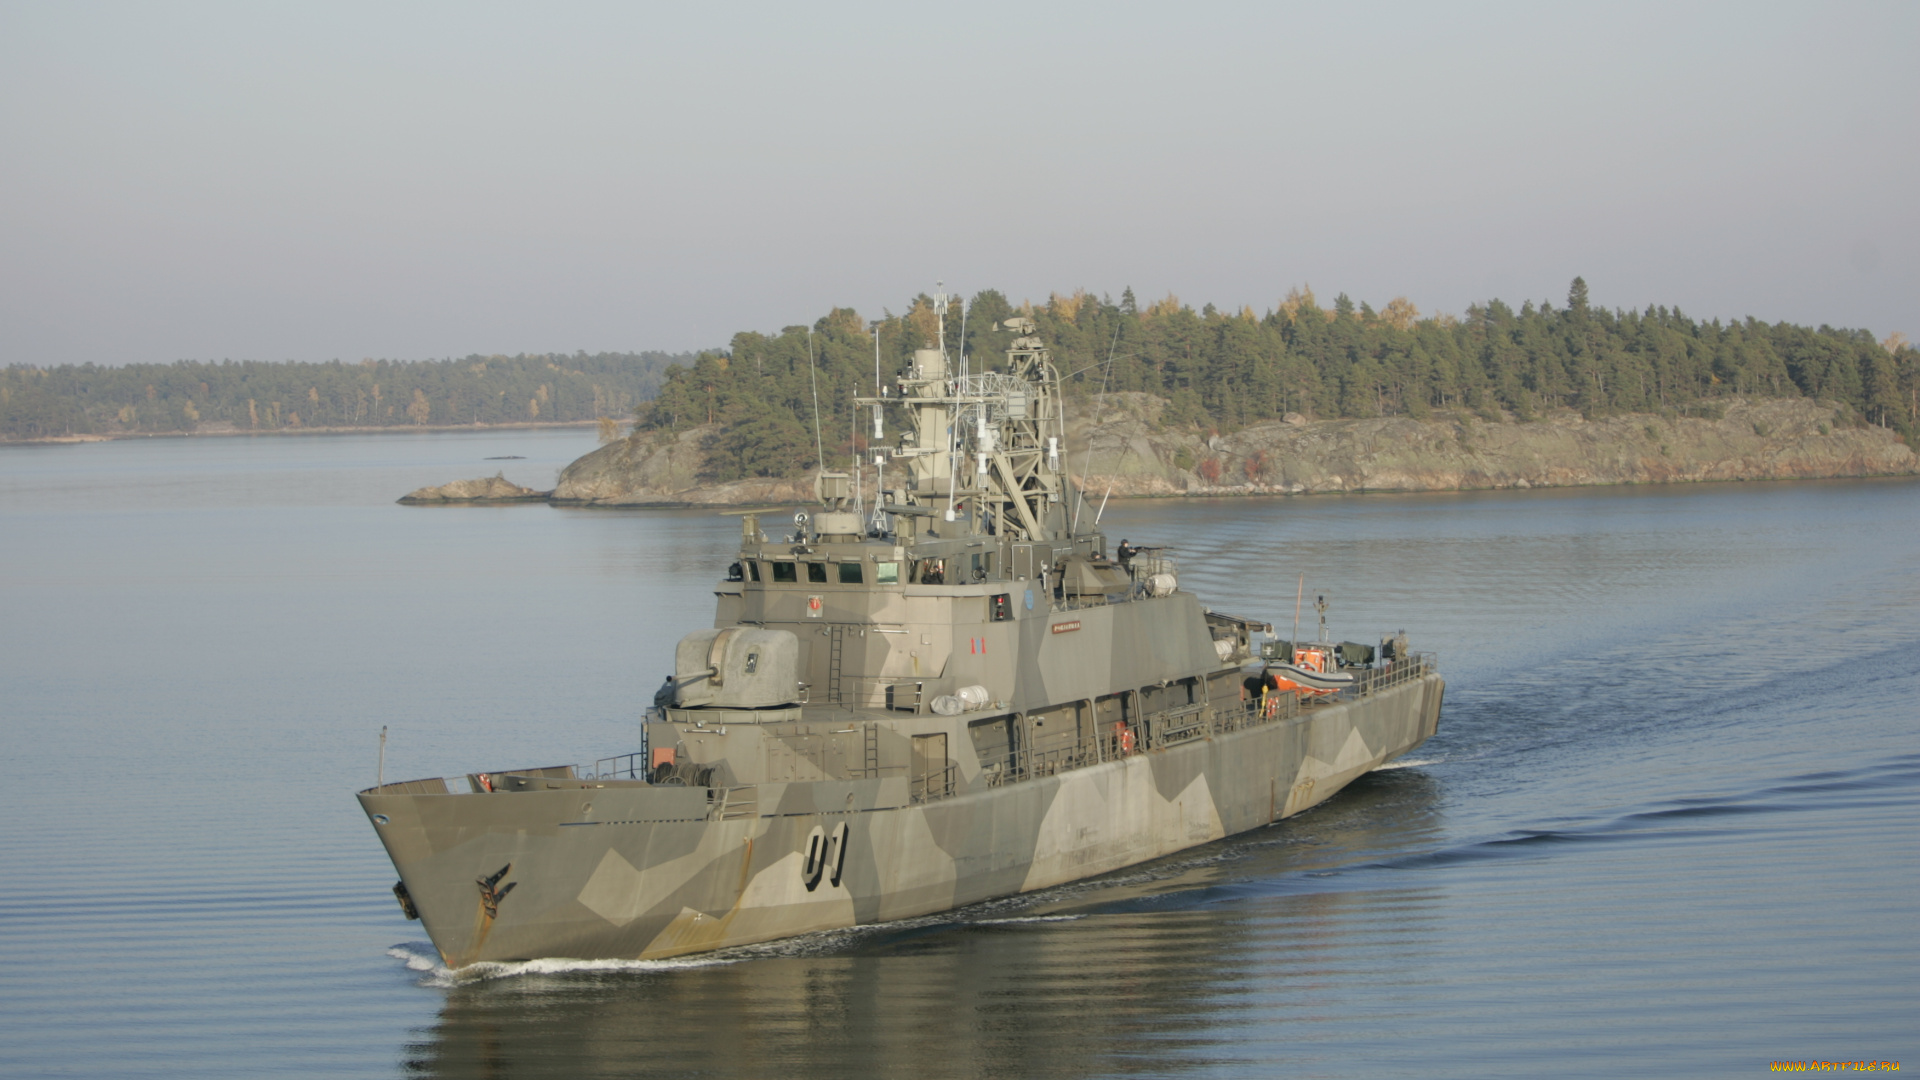 minelayer, pohjanmaa, корабли, крейсеры, линкоры, эсминцы, флагман, финских, вмс, минный, заградитель